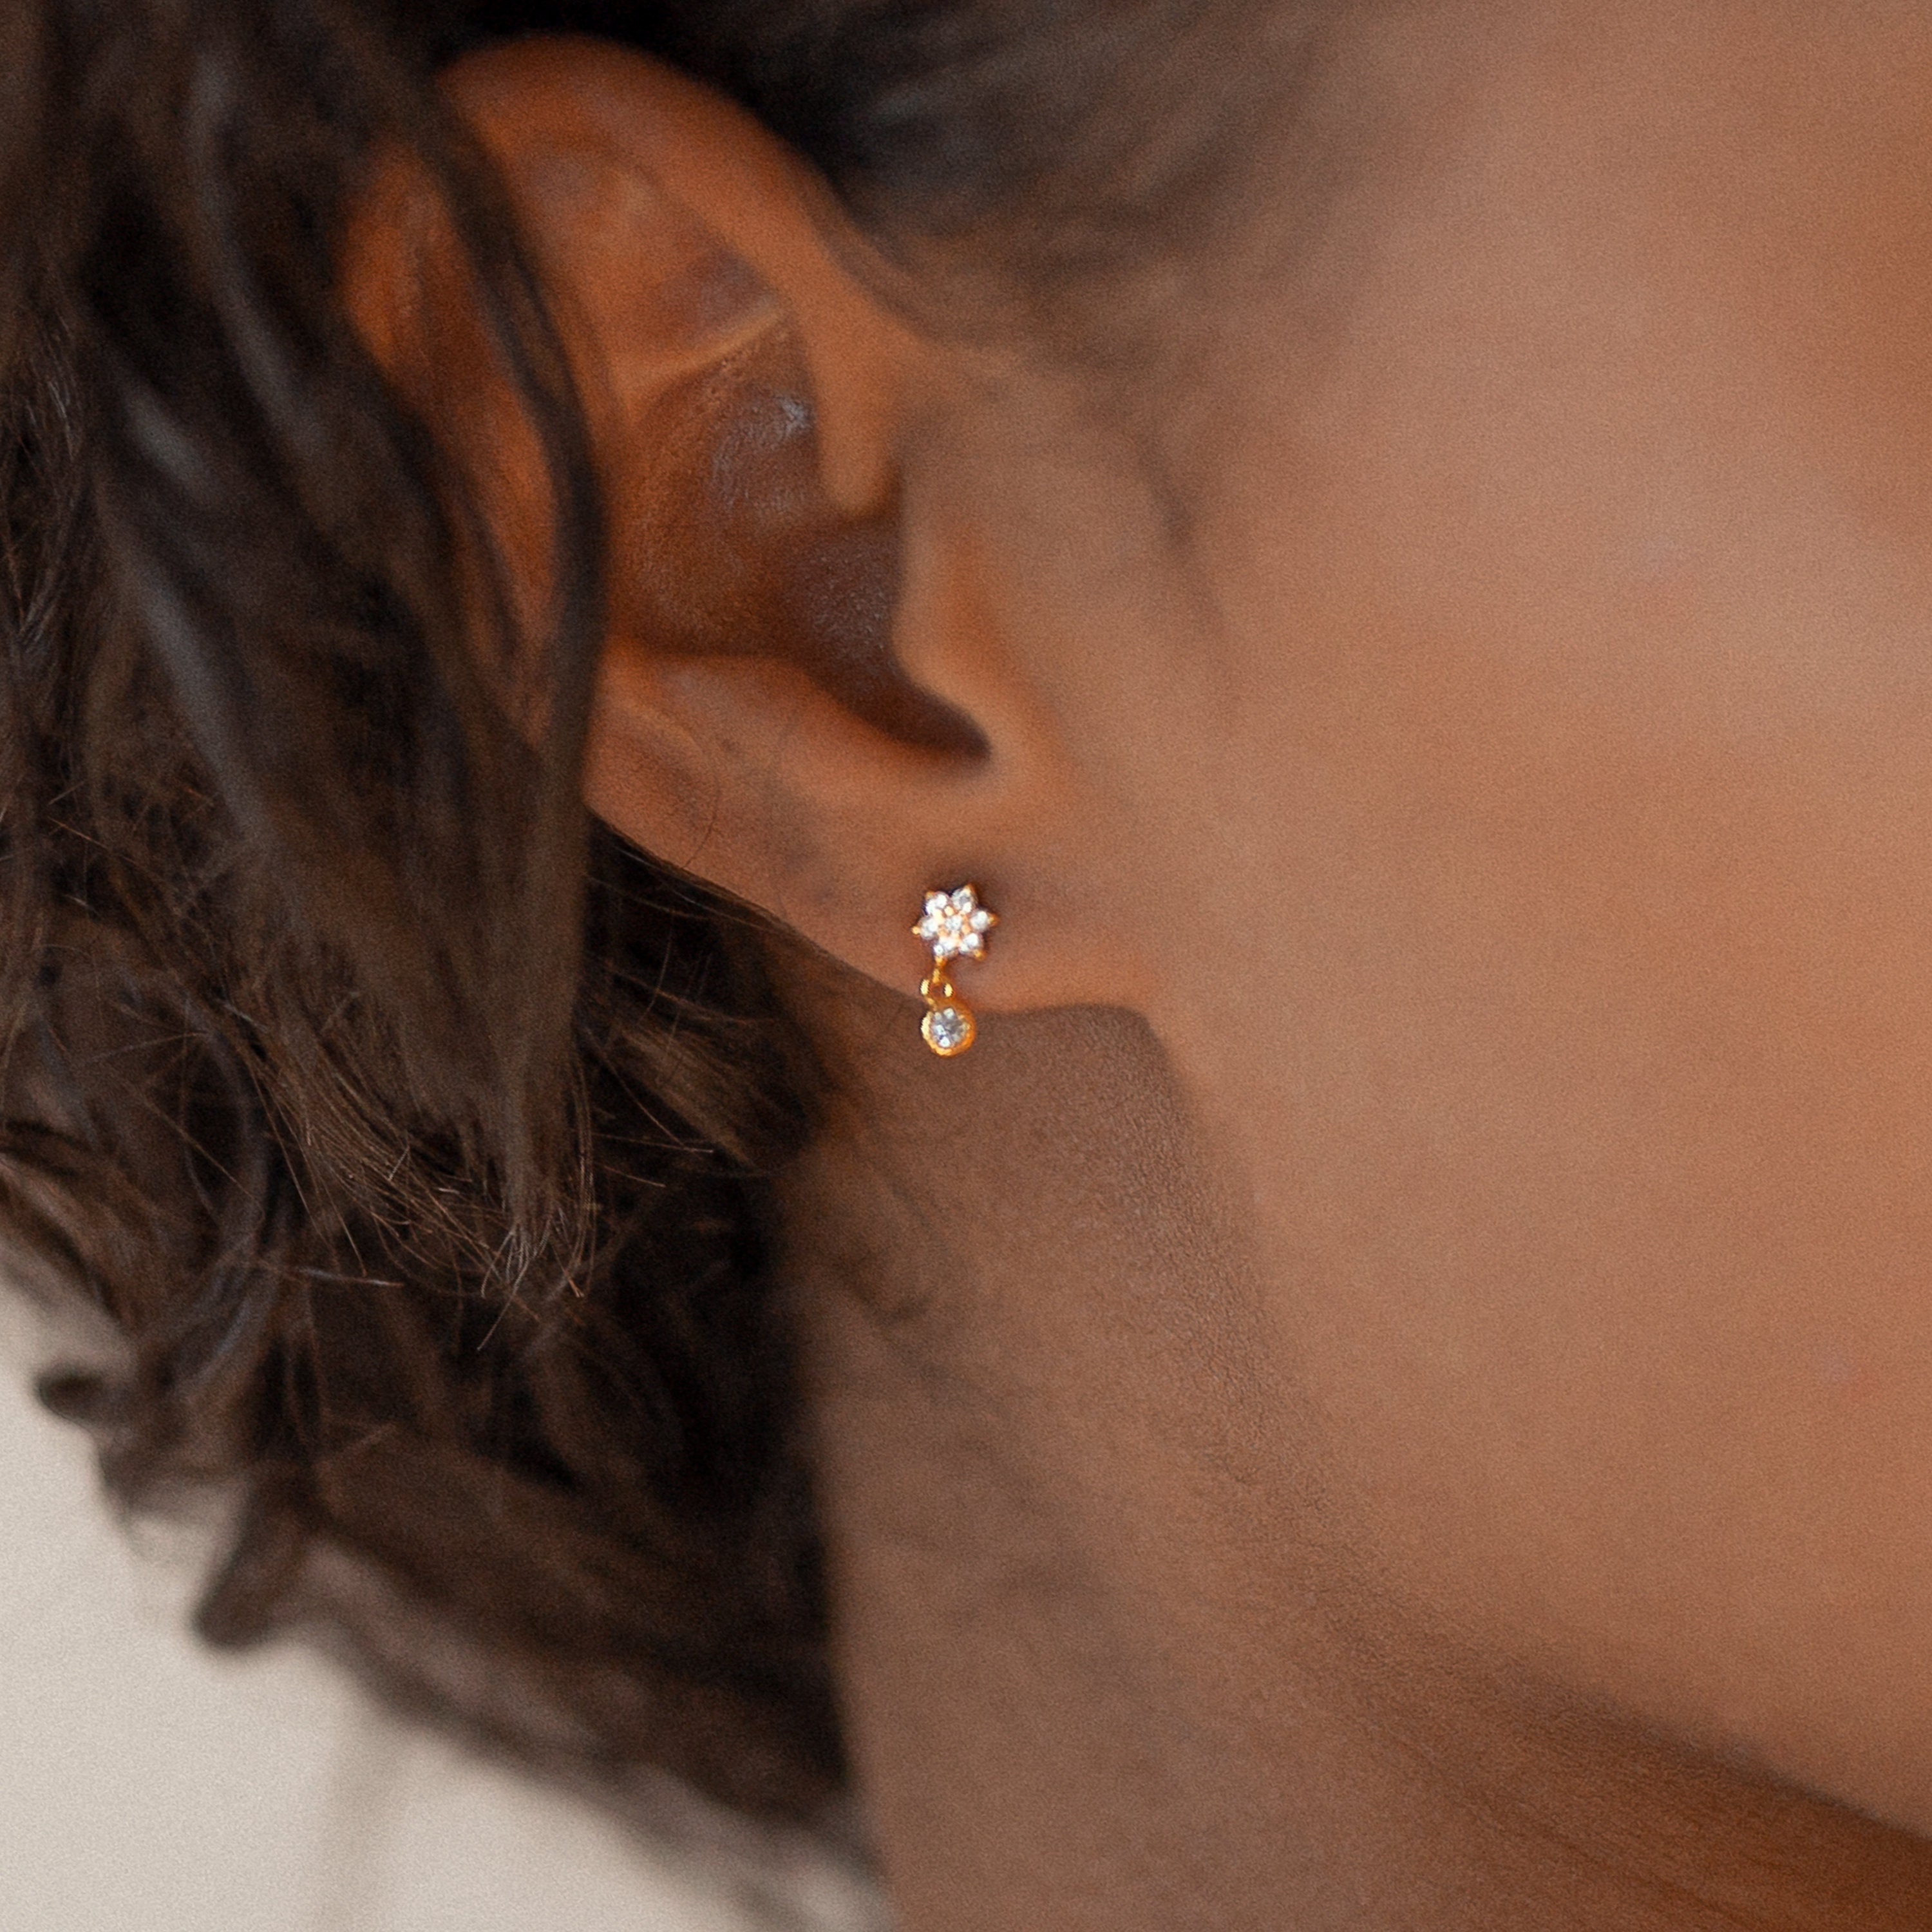 LEXI Earrings • Dainty Flower Stud Earrings by CaitlynMinimalist • Minimalist Earrings • Perfect Gift for Her • ER027 Jewellery Earrings Cluster Earrings 